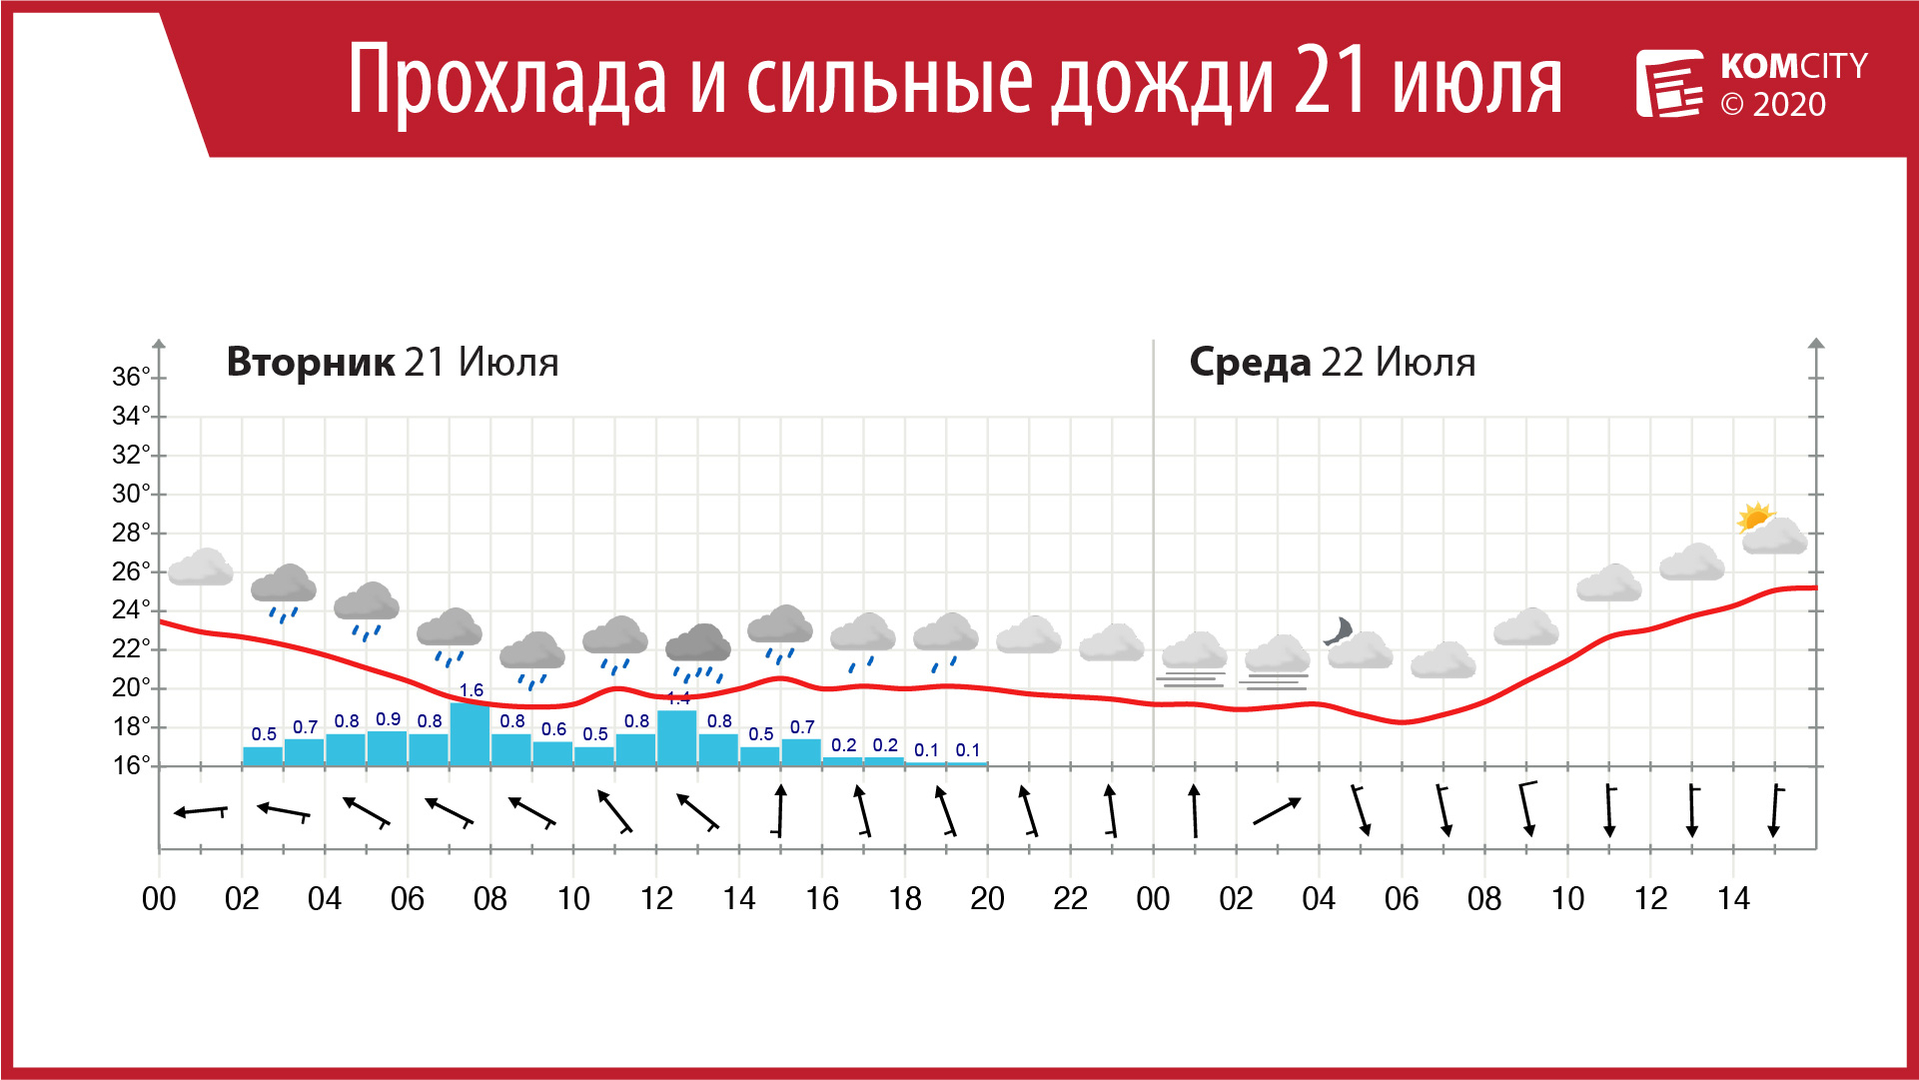 Завтра в Комсомольске-на-Амуре будет прохладно и дождливо